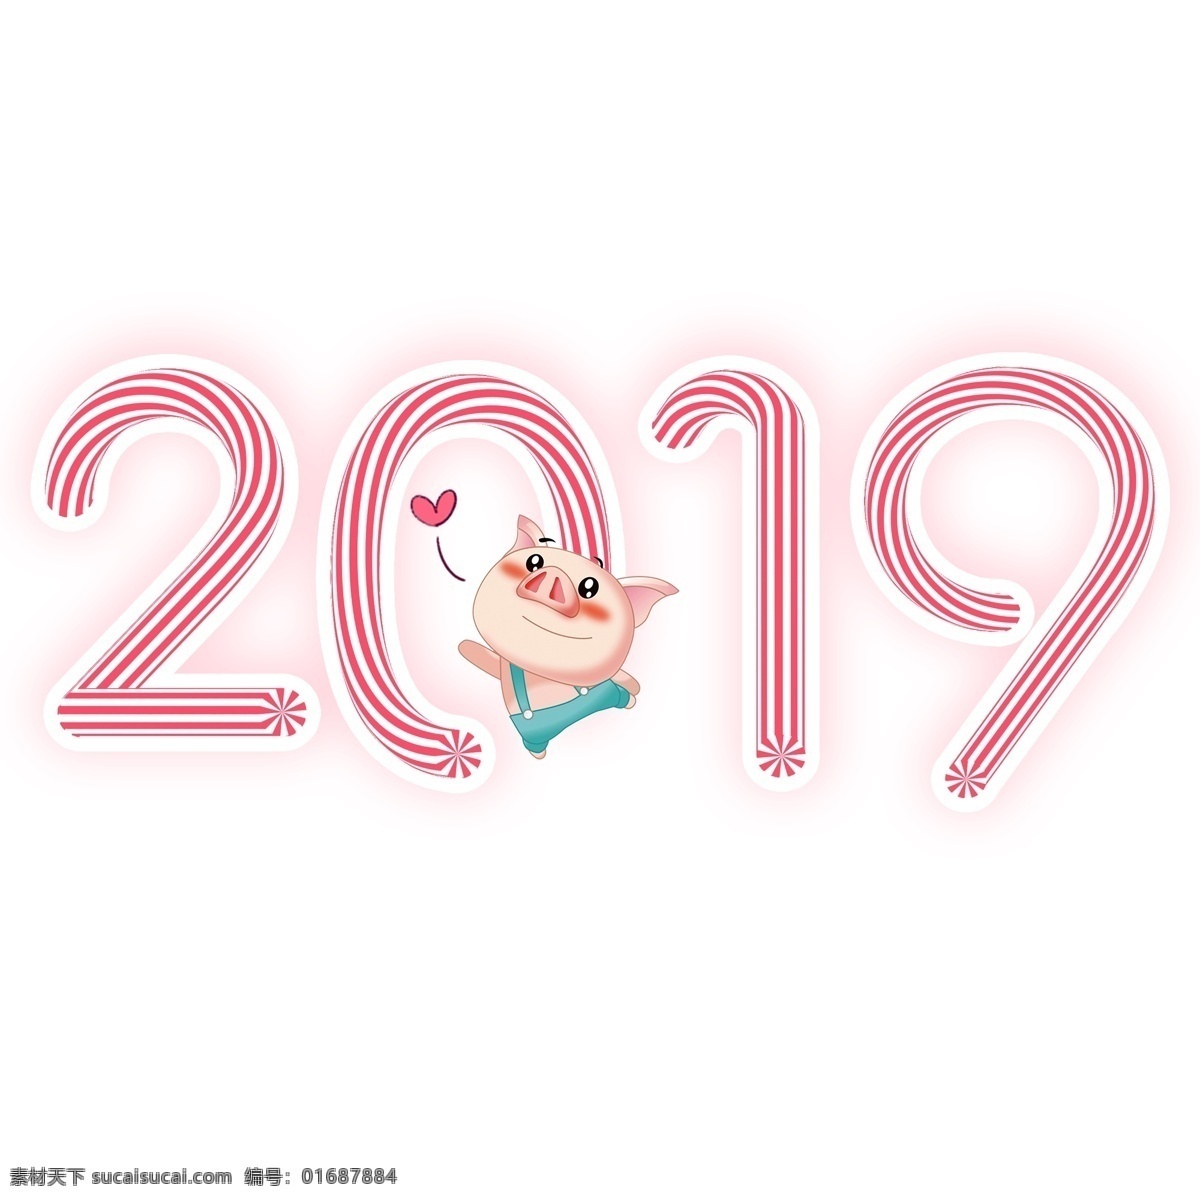 2019 年 猪年 新年 红色 糖果 艺术 字 电商 促销 彩色 购物节 电商促销 艺术字 糖果字体